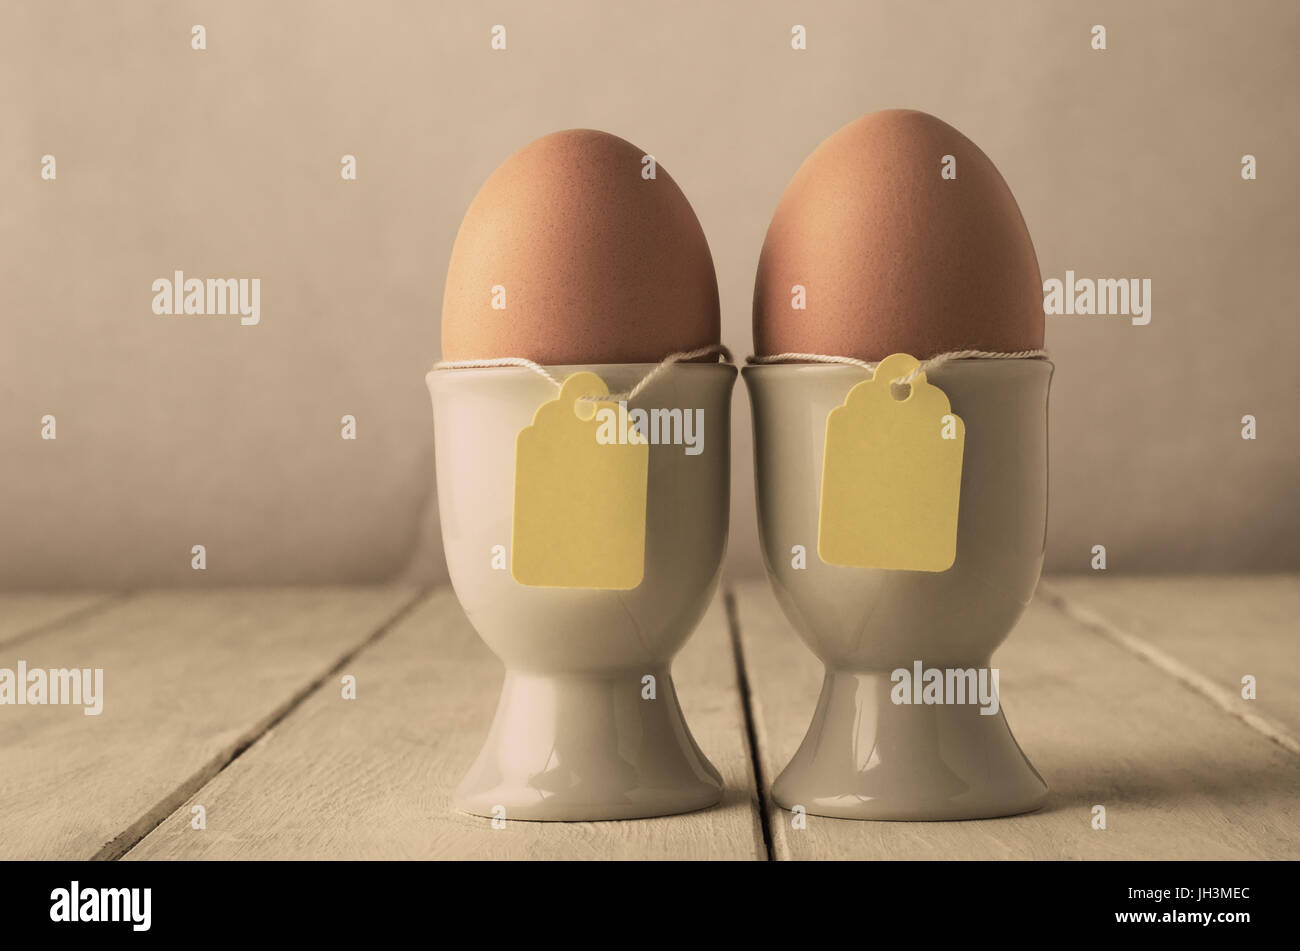 Ein paar braune Eier in Eierbecher mit Preisschild Stil Etiketten auf Zeichenfolge.  Alte weiße geplankte Holztisch.  Farbtöne für retro oder Vintage Auftritt angepasst Stockfoto